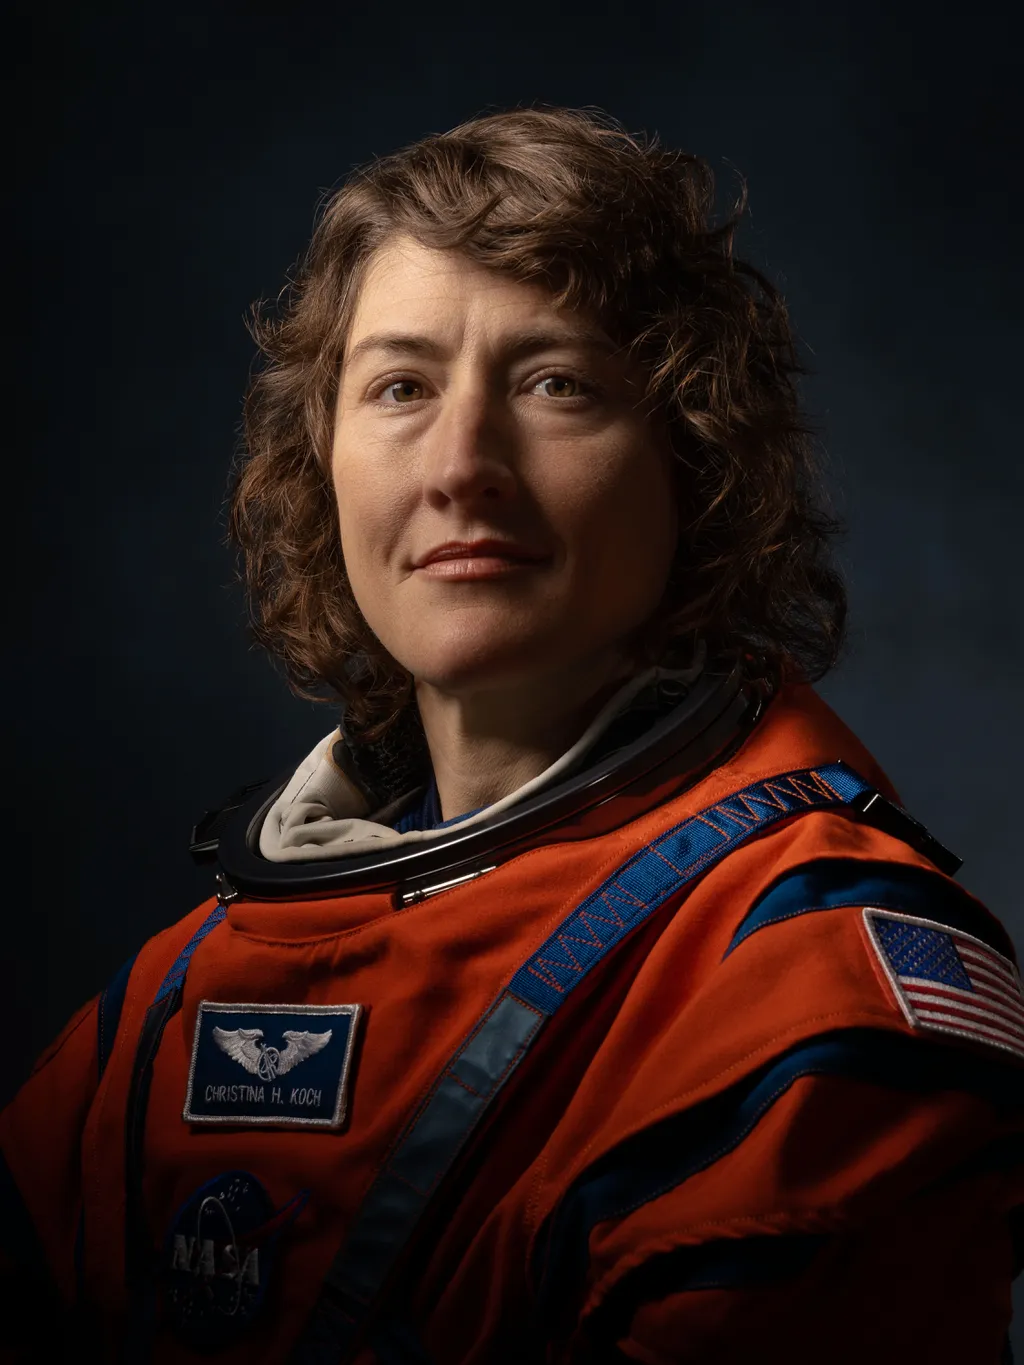 Chrstina Koch estará na missão Artemis 2 (Imagem: Reprodução/NASA)